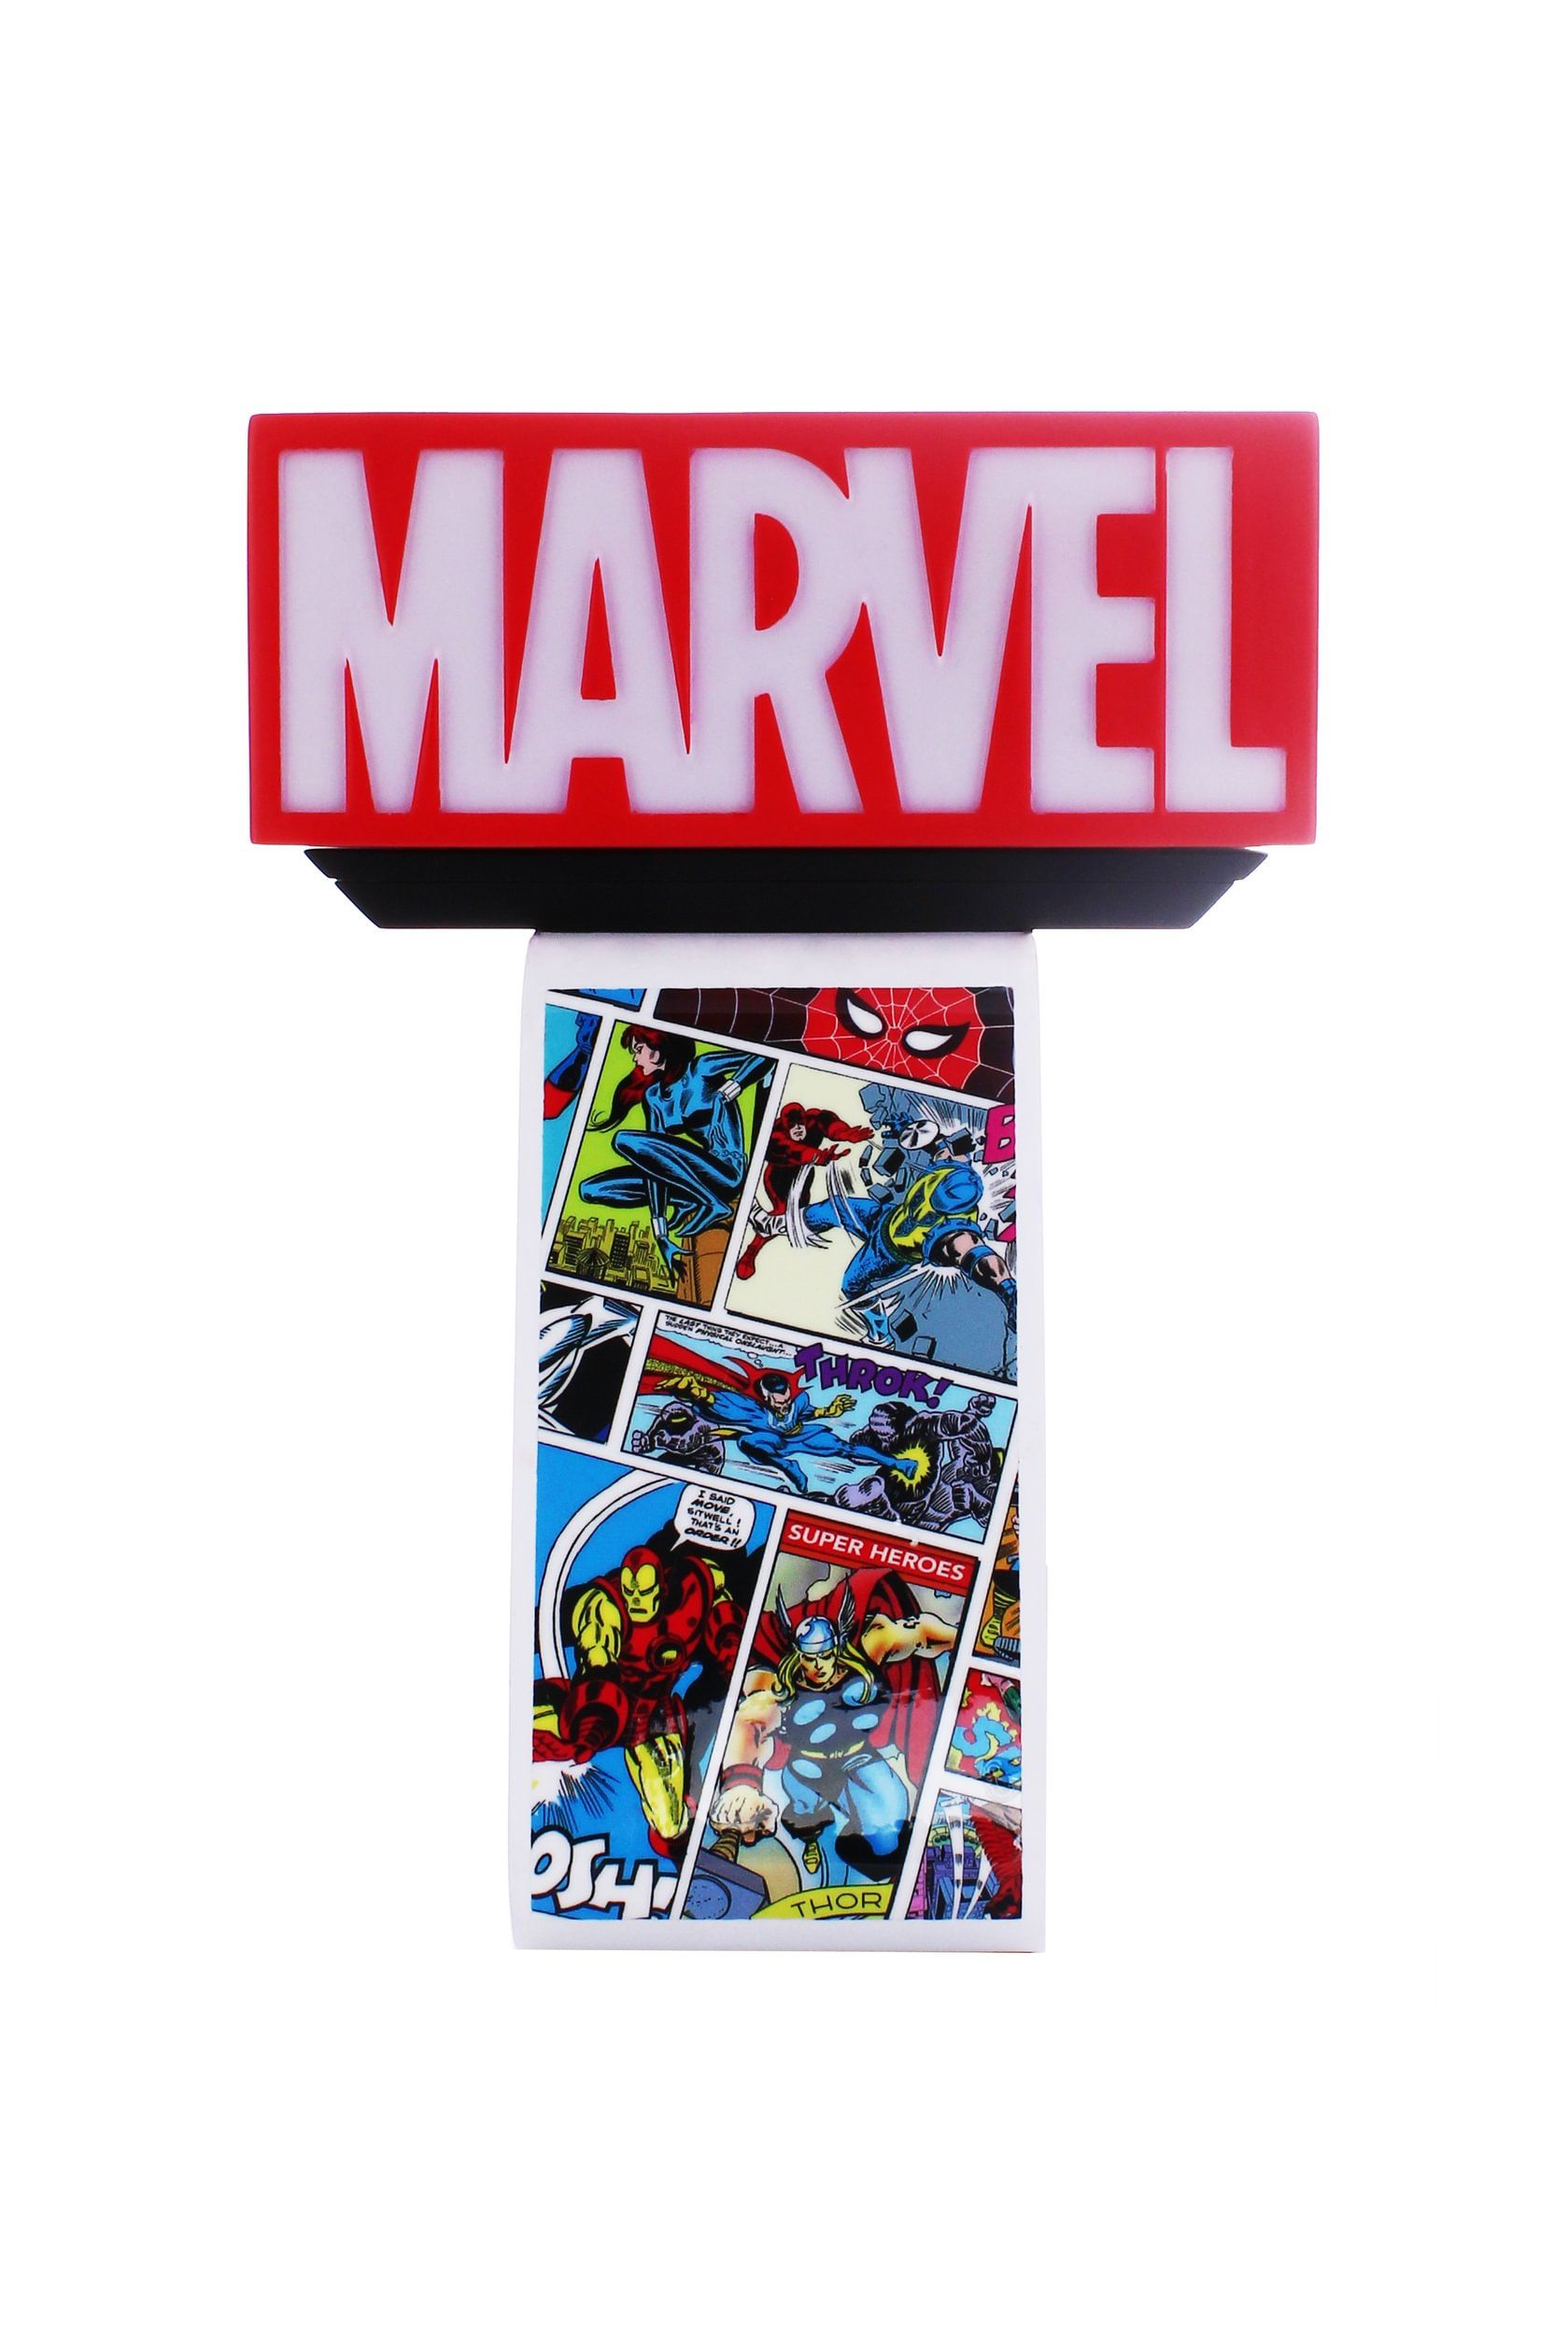 EXQUISITE GAMING Logo Marvel Comics